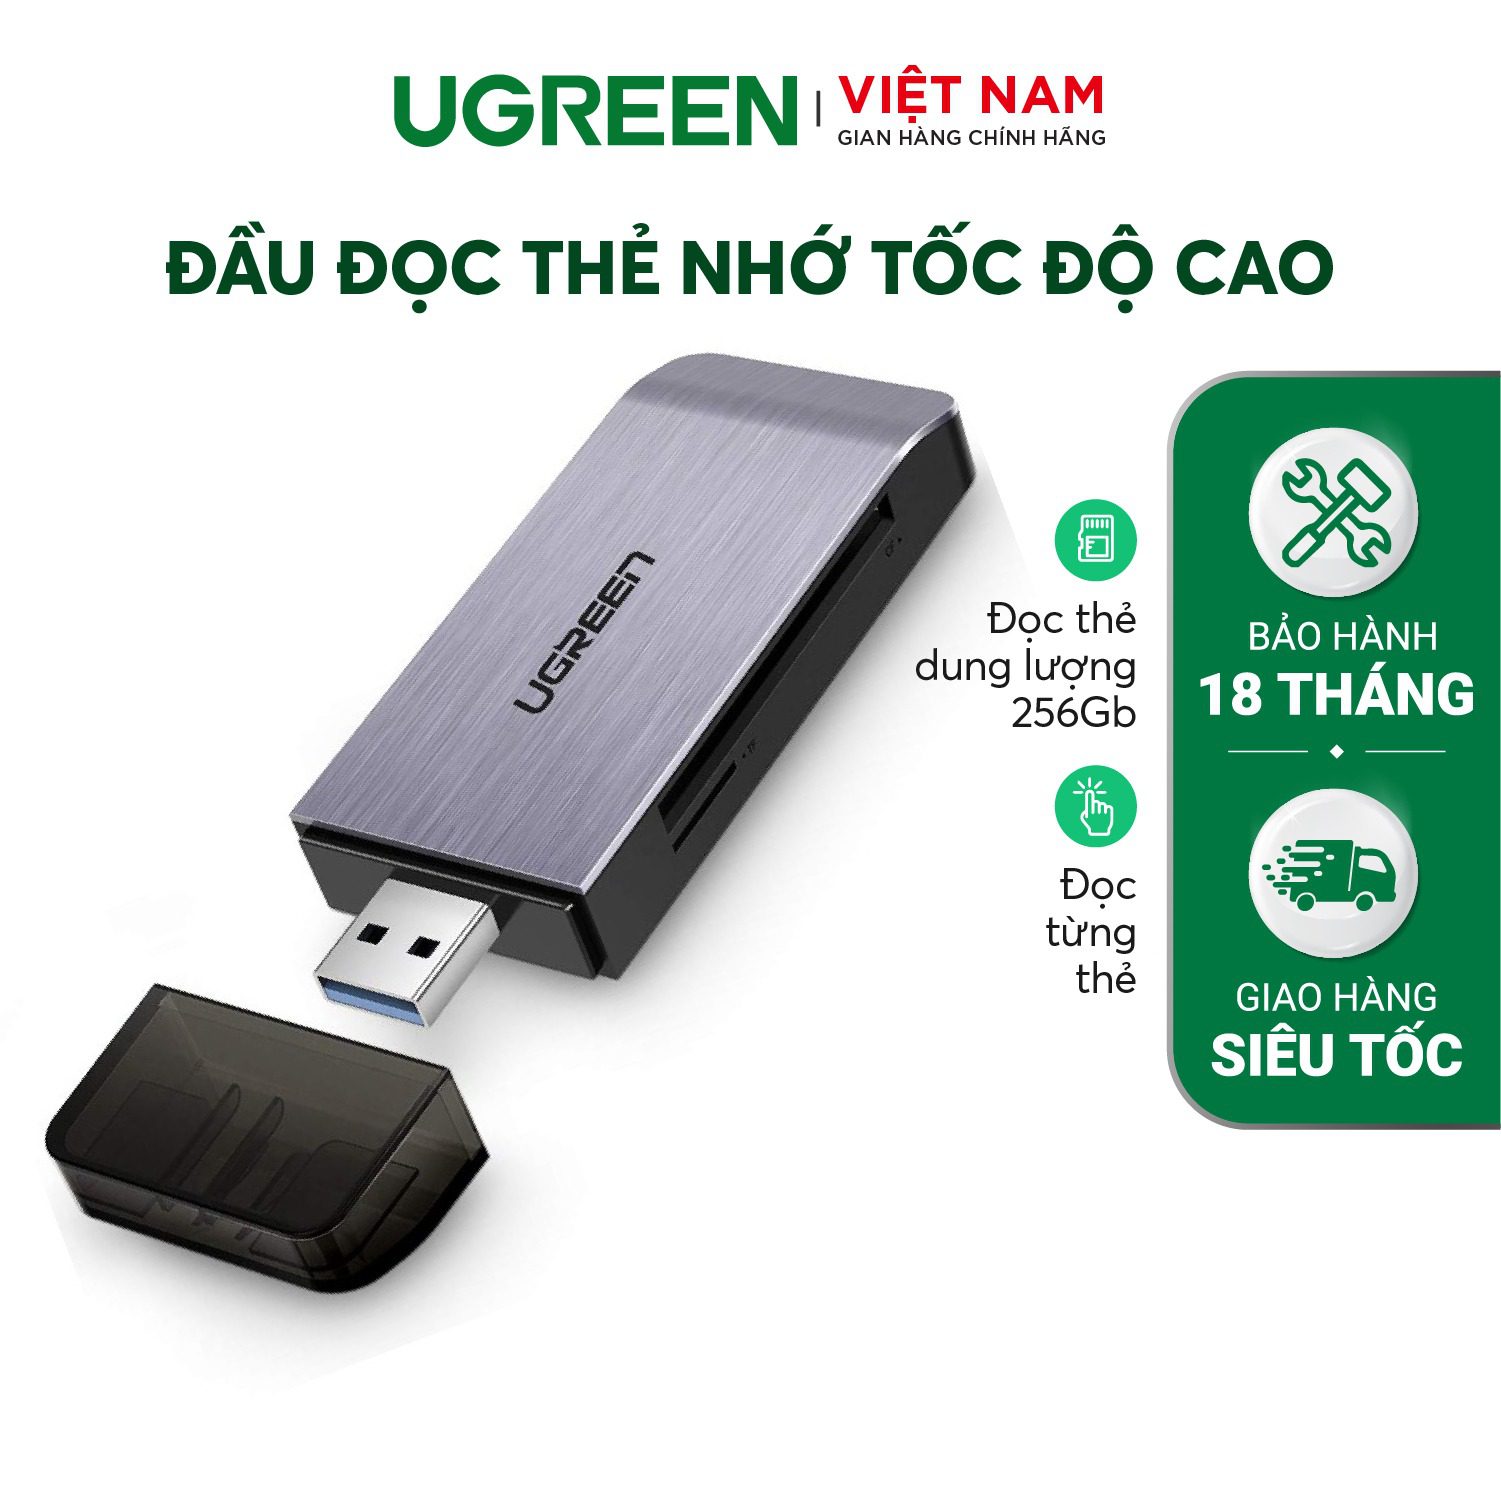 Đầu đọc thẻ UGREEN CM180 Tốc độ cao đa năng hỗ trợ thẻ SD/TF/CF/MS đọc cùng lúc 4 thẻ - Hỗ trợ đọc thẻ 256GB – Ugreen Việt Nam